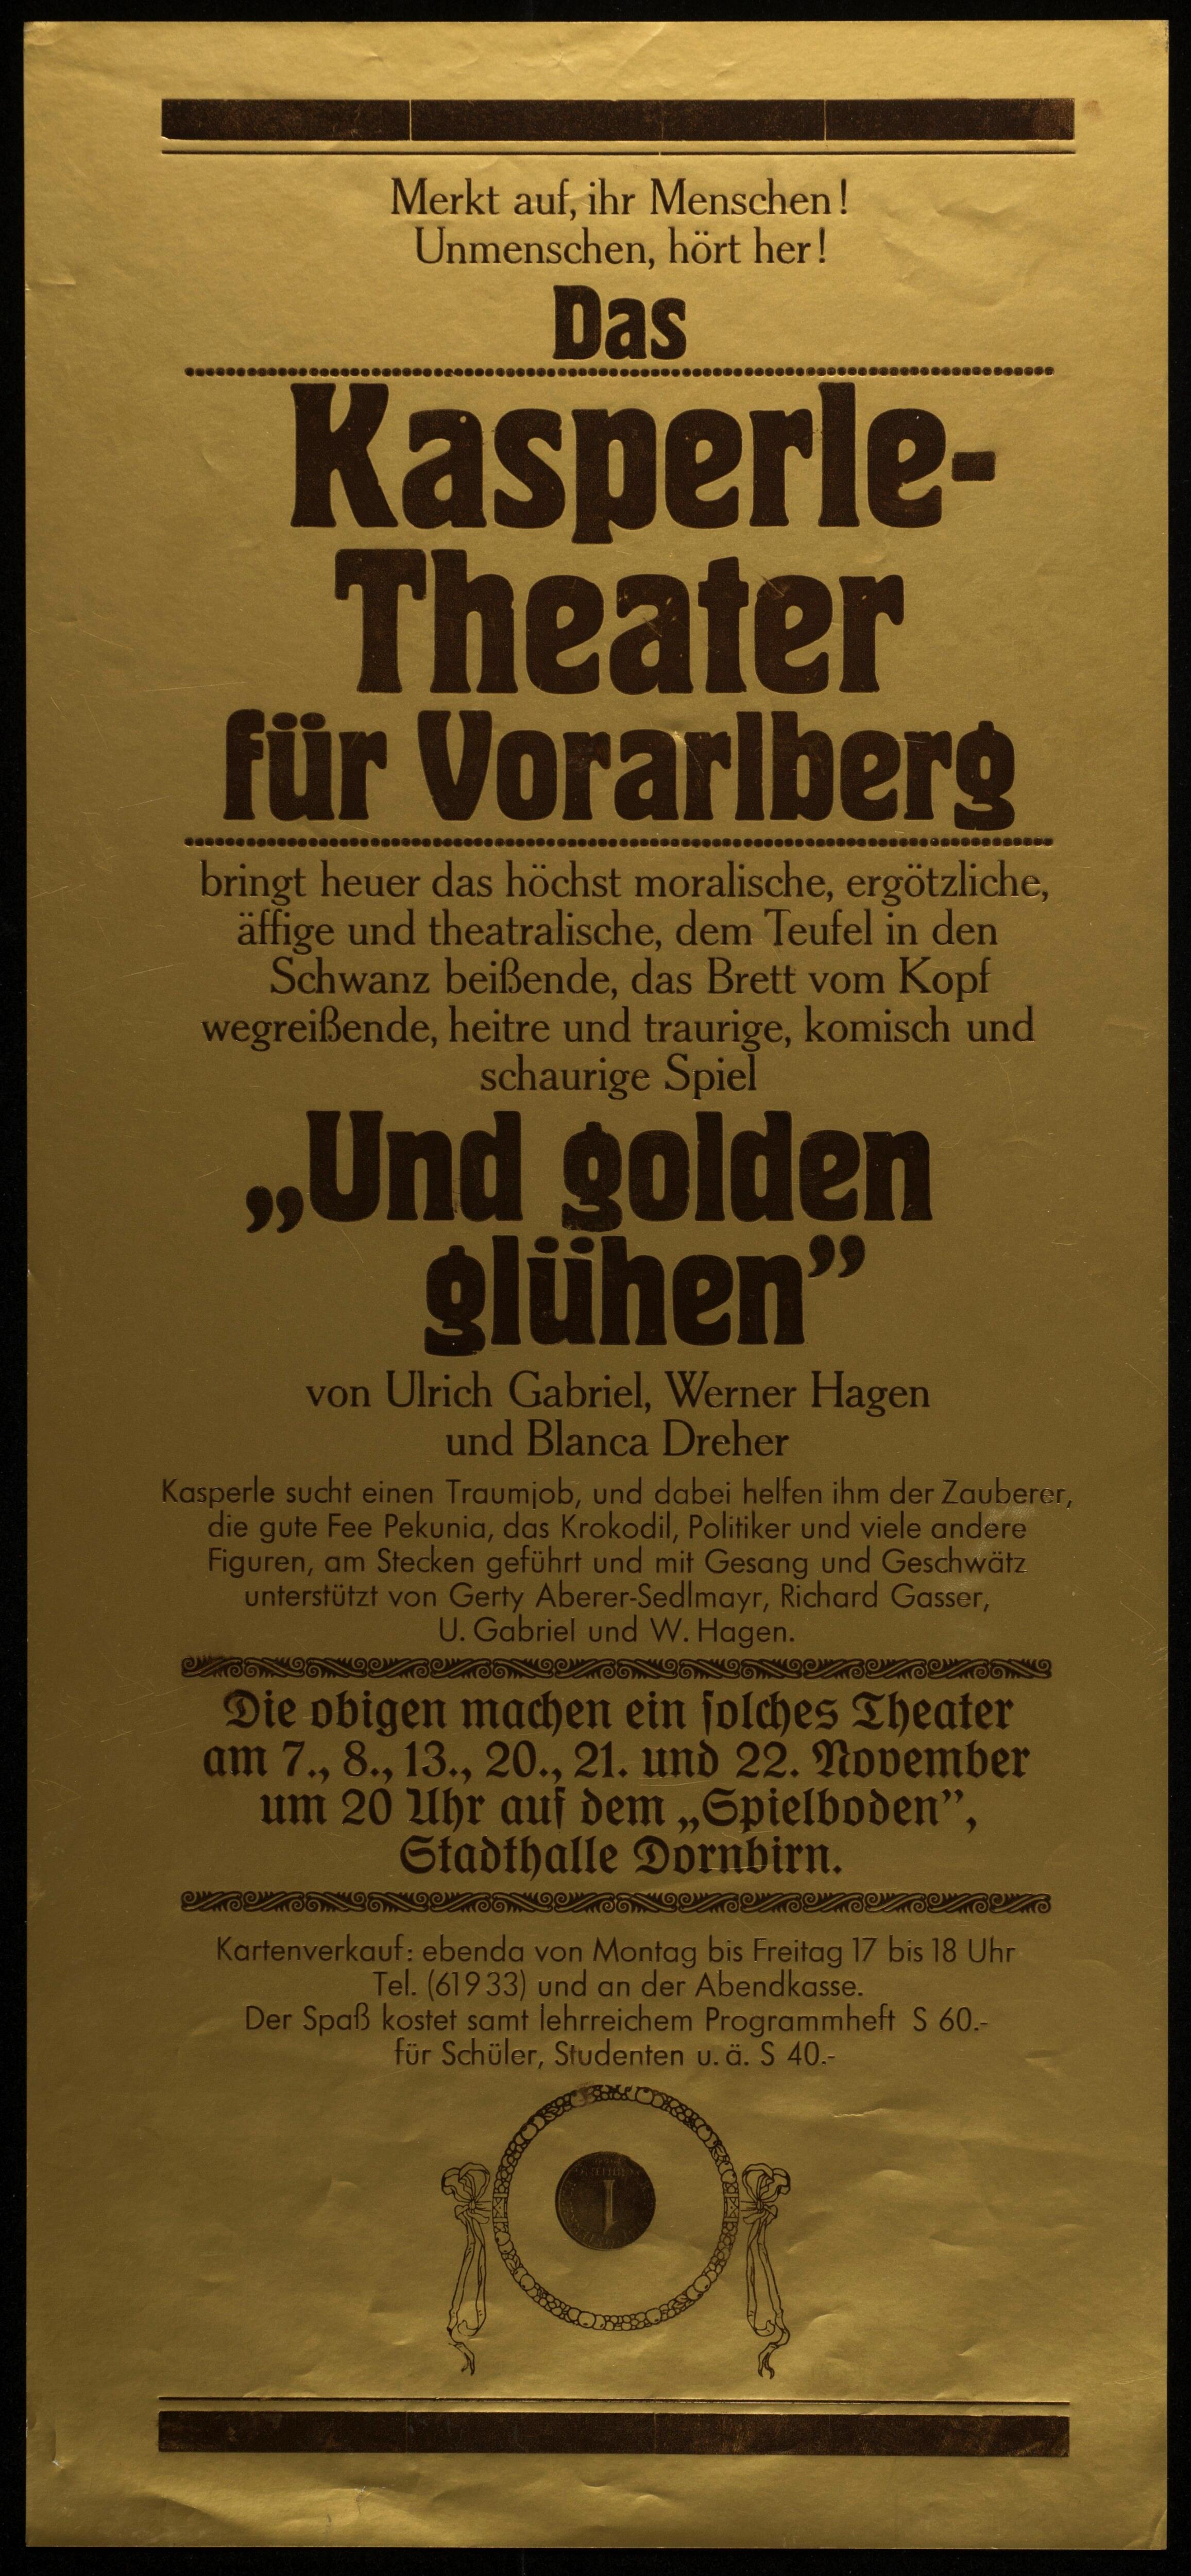 Kasperle-Theater für Vorarlberg></div>


    <hr>
    <div class=